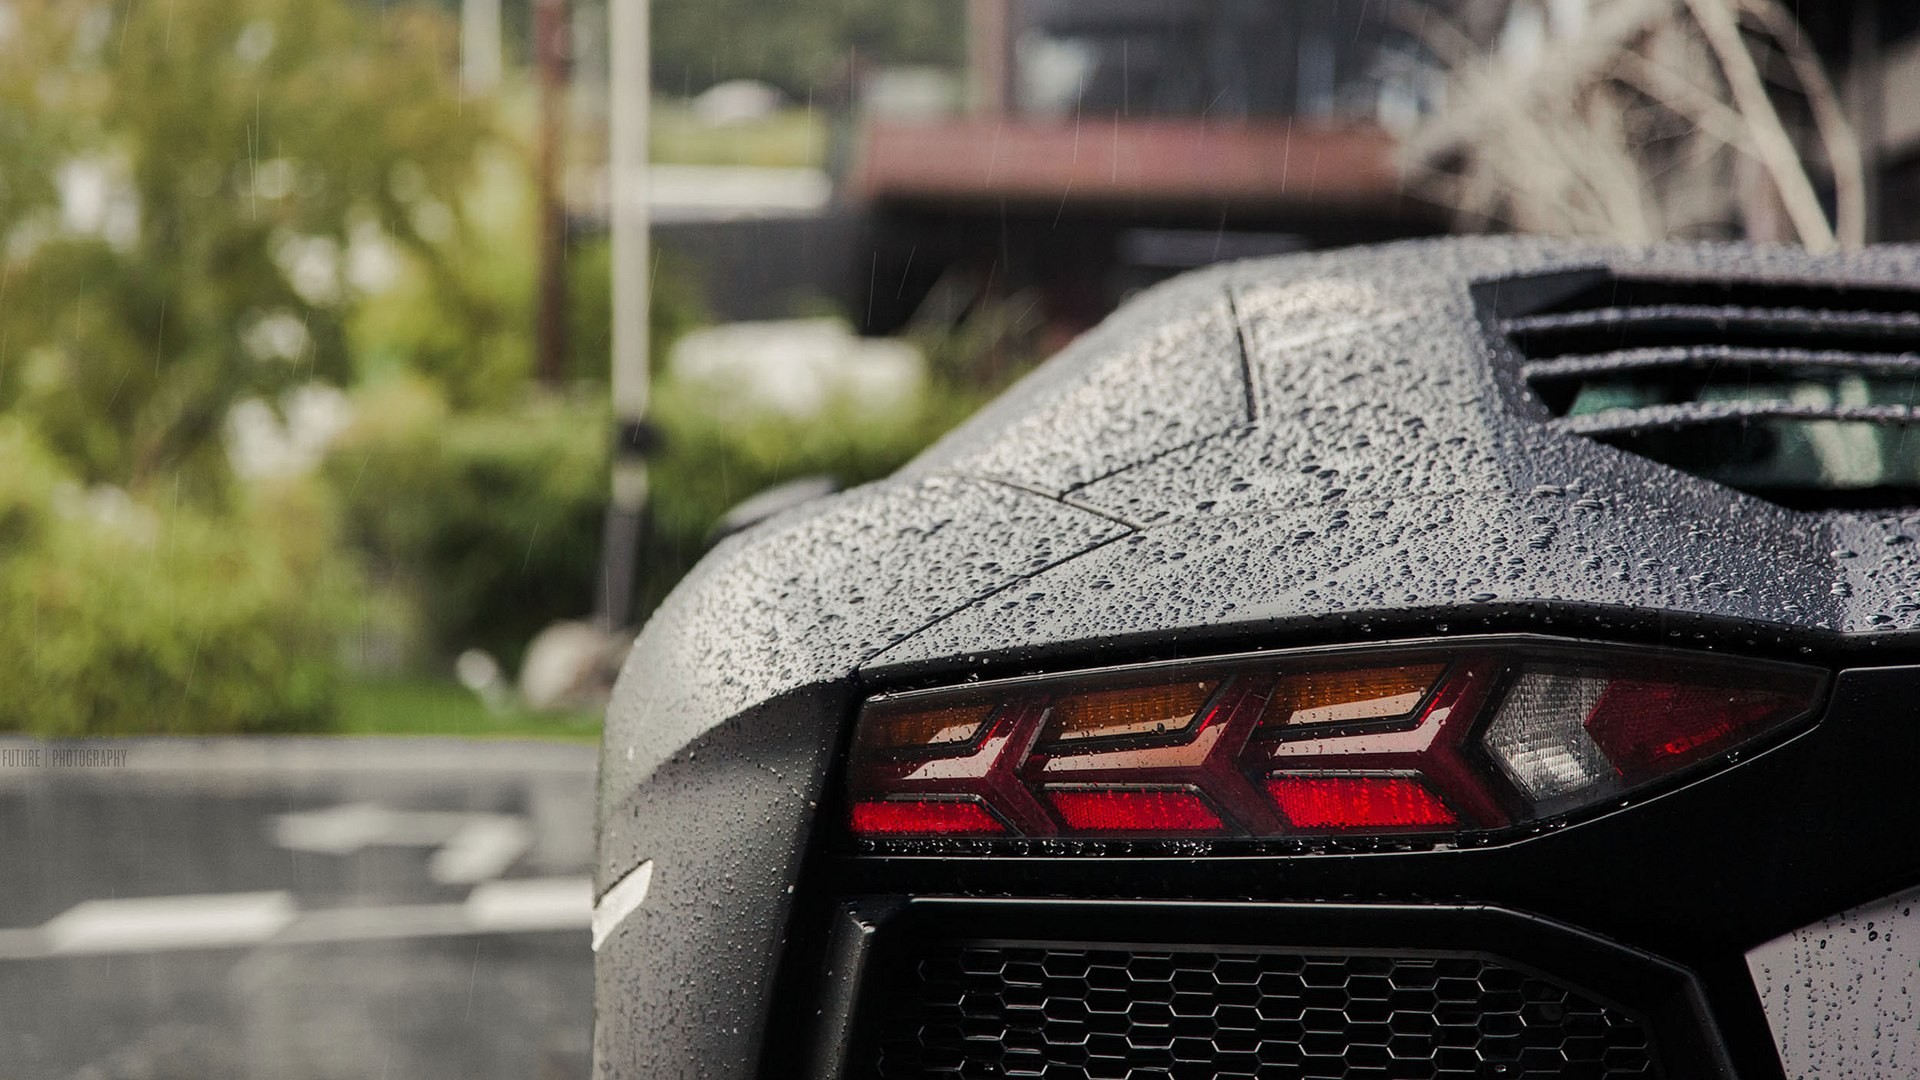 Lamborghini Aventador LP 750 4, Rain, Black cars, Water drops, Lamborghini, Vehicle, Lamborghini Aventador Wallpaper